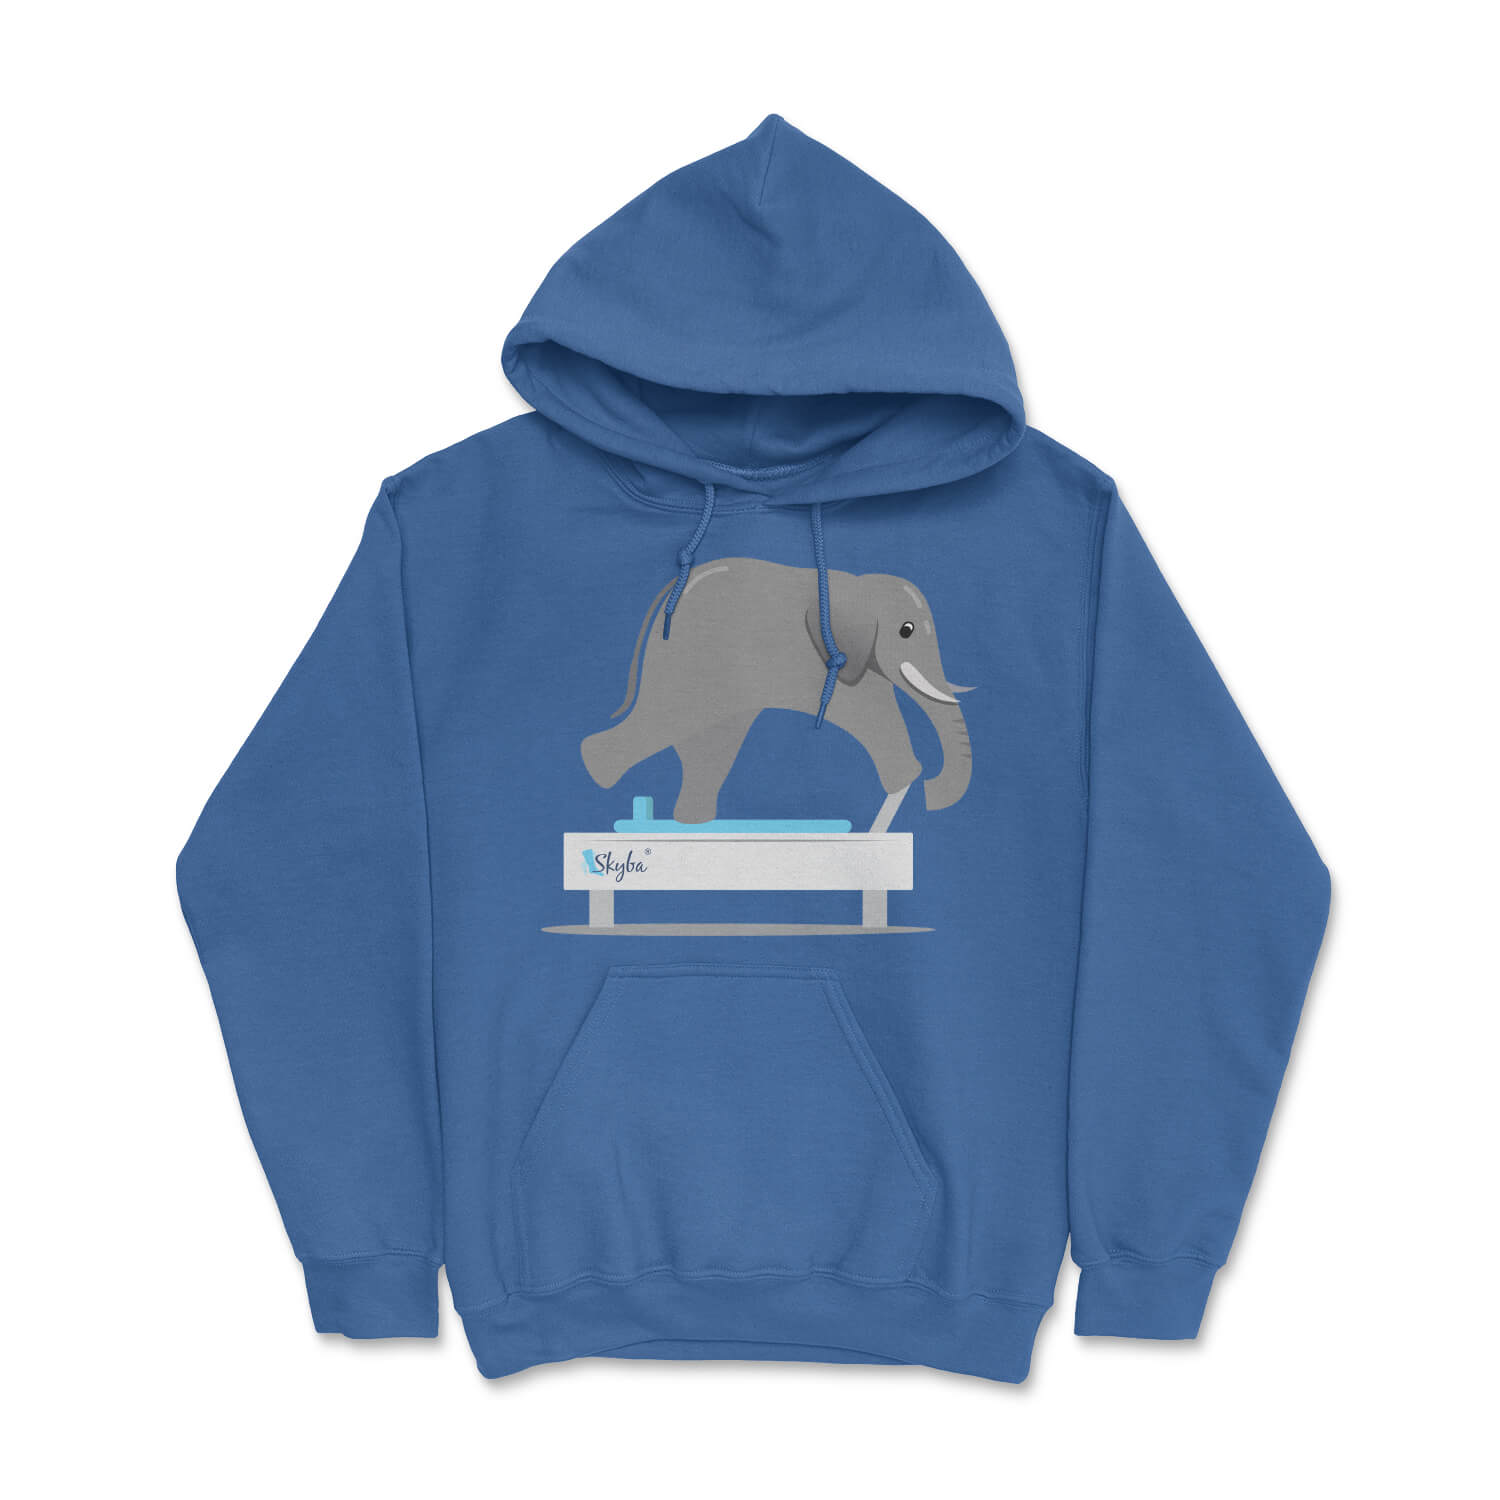 Elephant on Reformer - Cozy Hooded Sweatshirt Skyba Hoodie